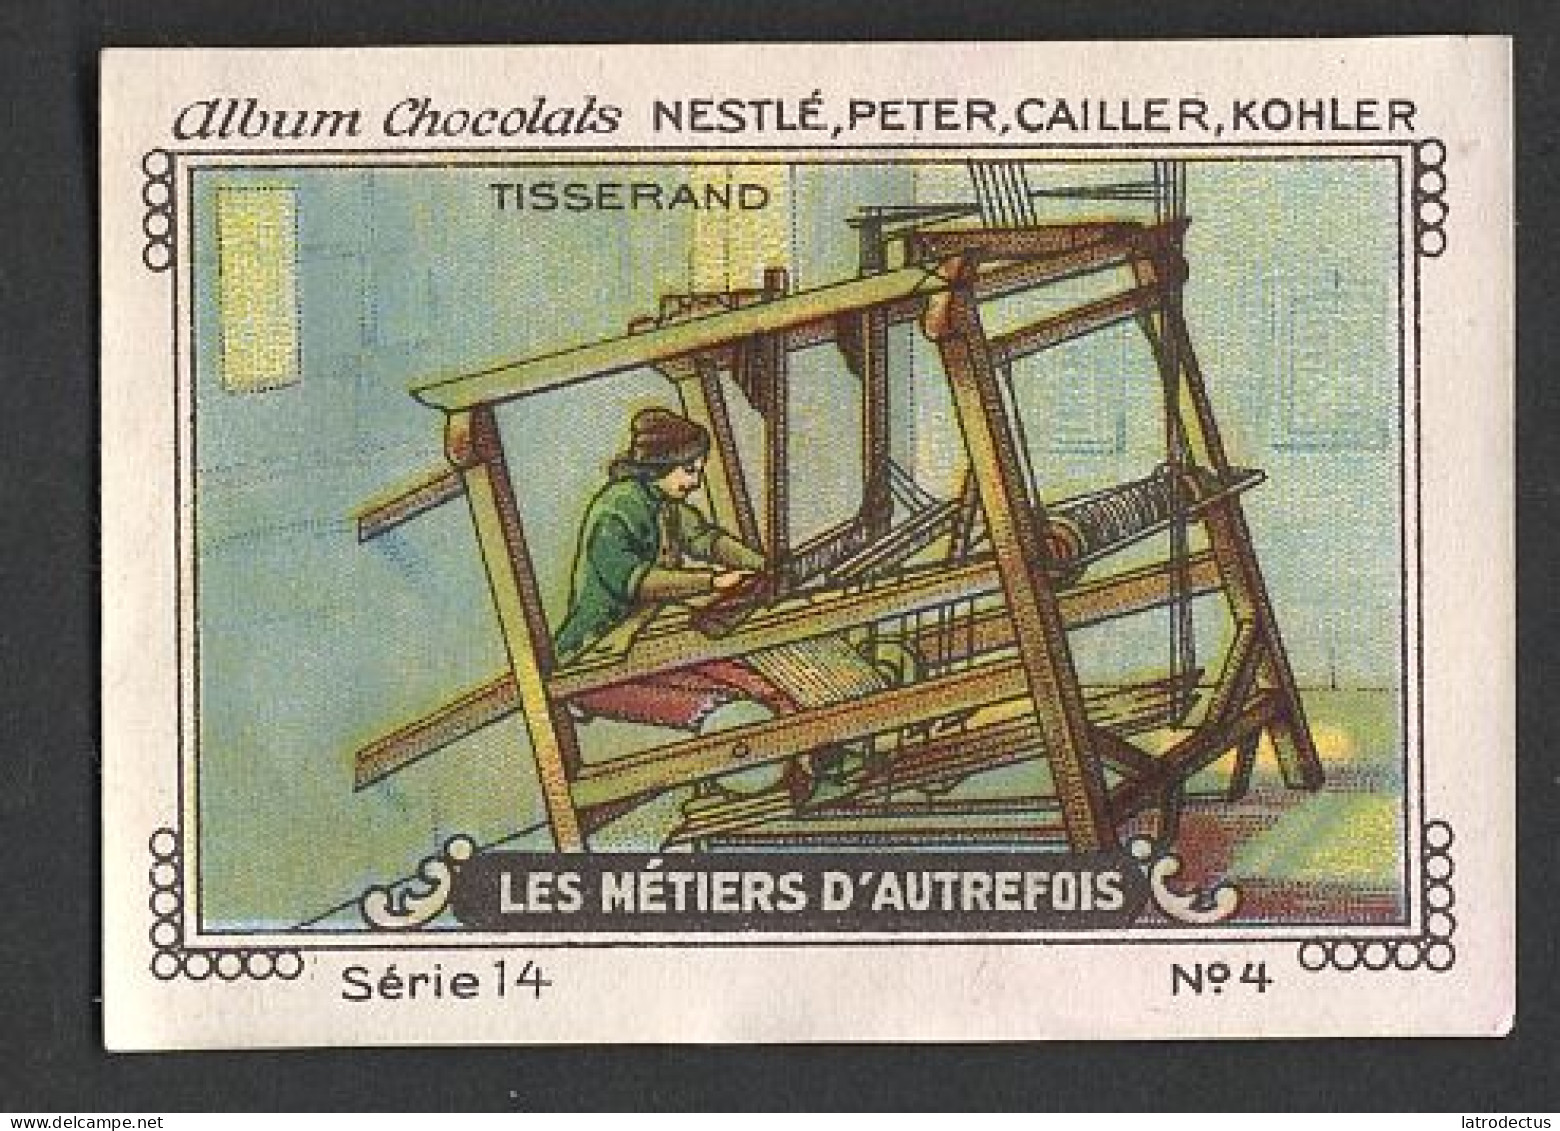 Nestlé - 14 - Les Métiers D'autrefois, Crafts Of Yesteryear - 4 - Tisserand, Weaver - Nestlé